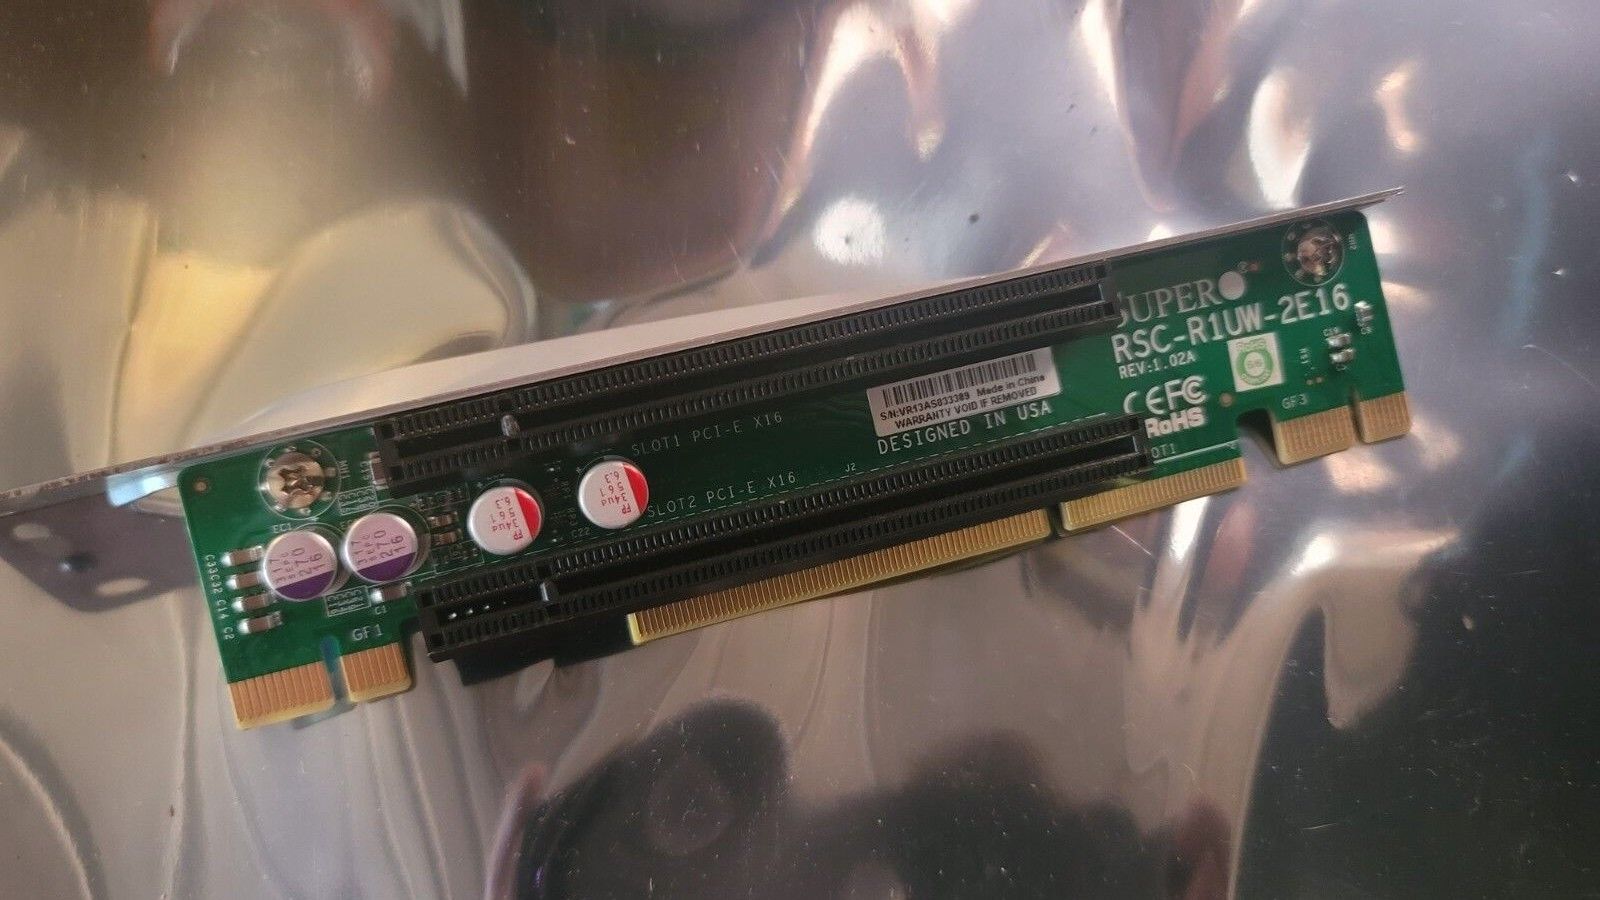 SUPERMICRO RSC-R1UW-2E16 REV 1.10 RIGHT ANGLED 1U RISER CARD PCIe 3.0 x8